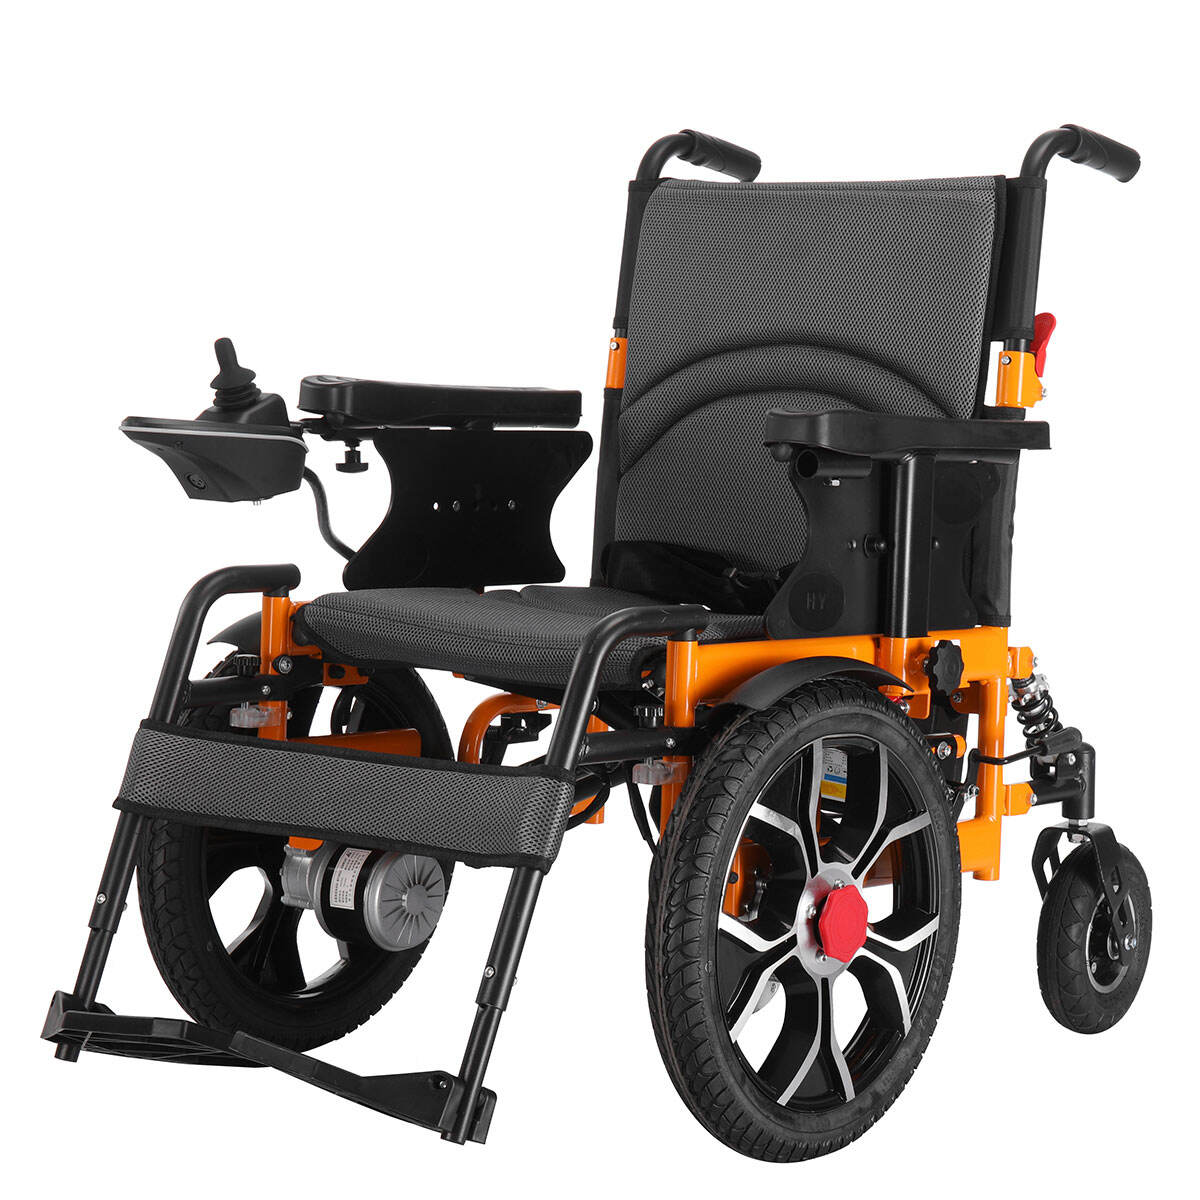 BC-ES600202 Silla de ruedas eléctrica aprobada por la CE para discapacitados